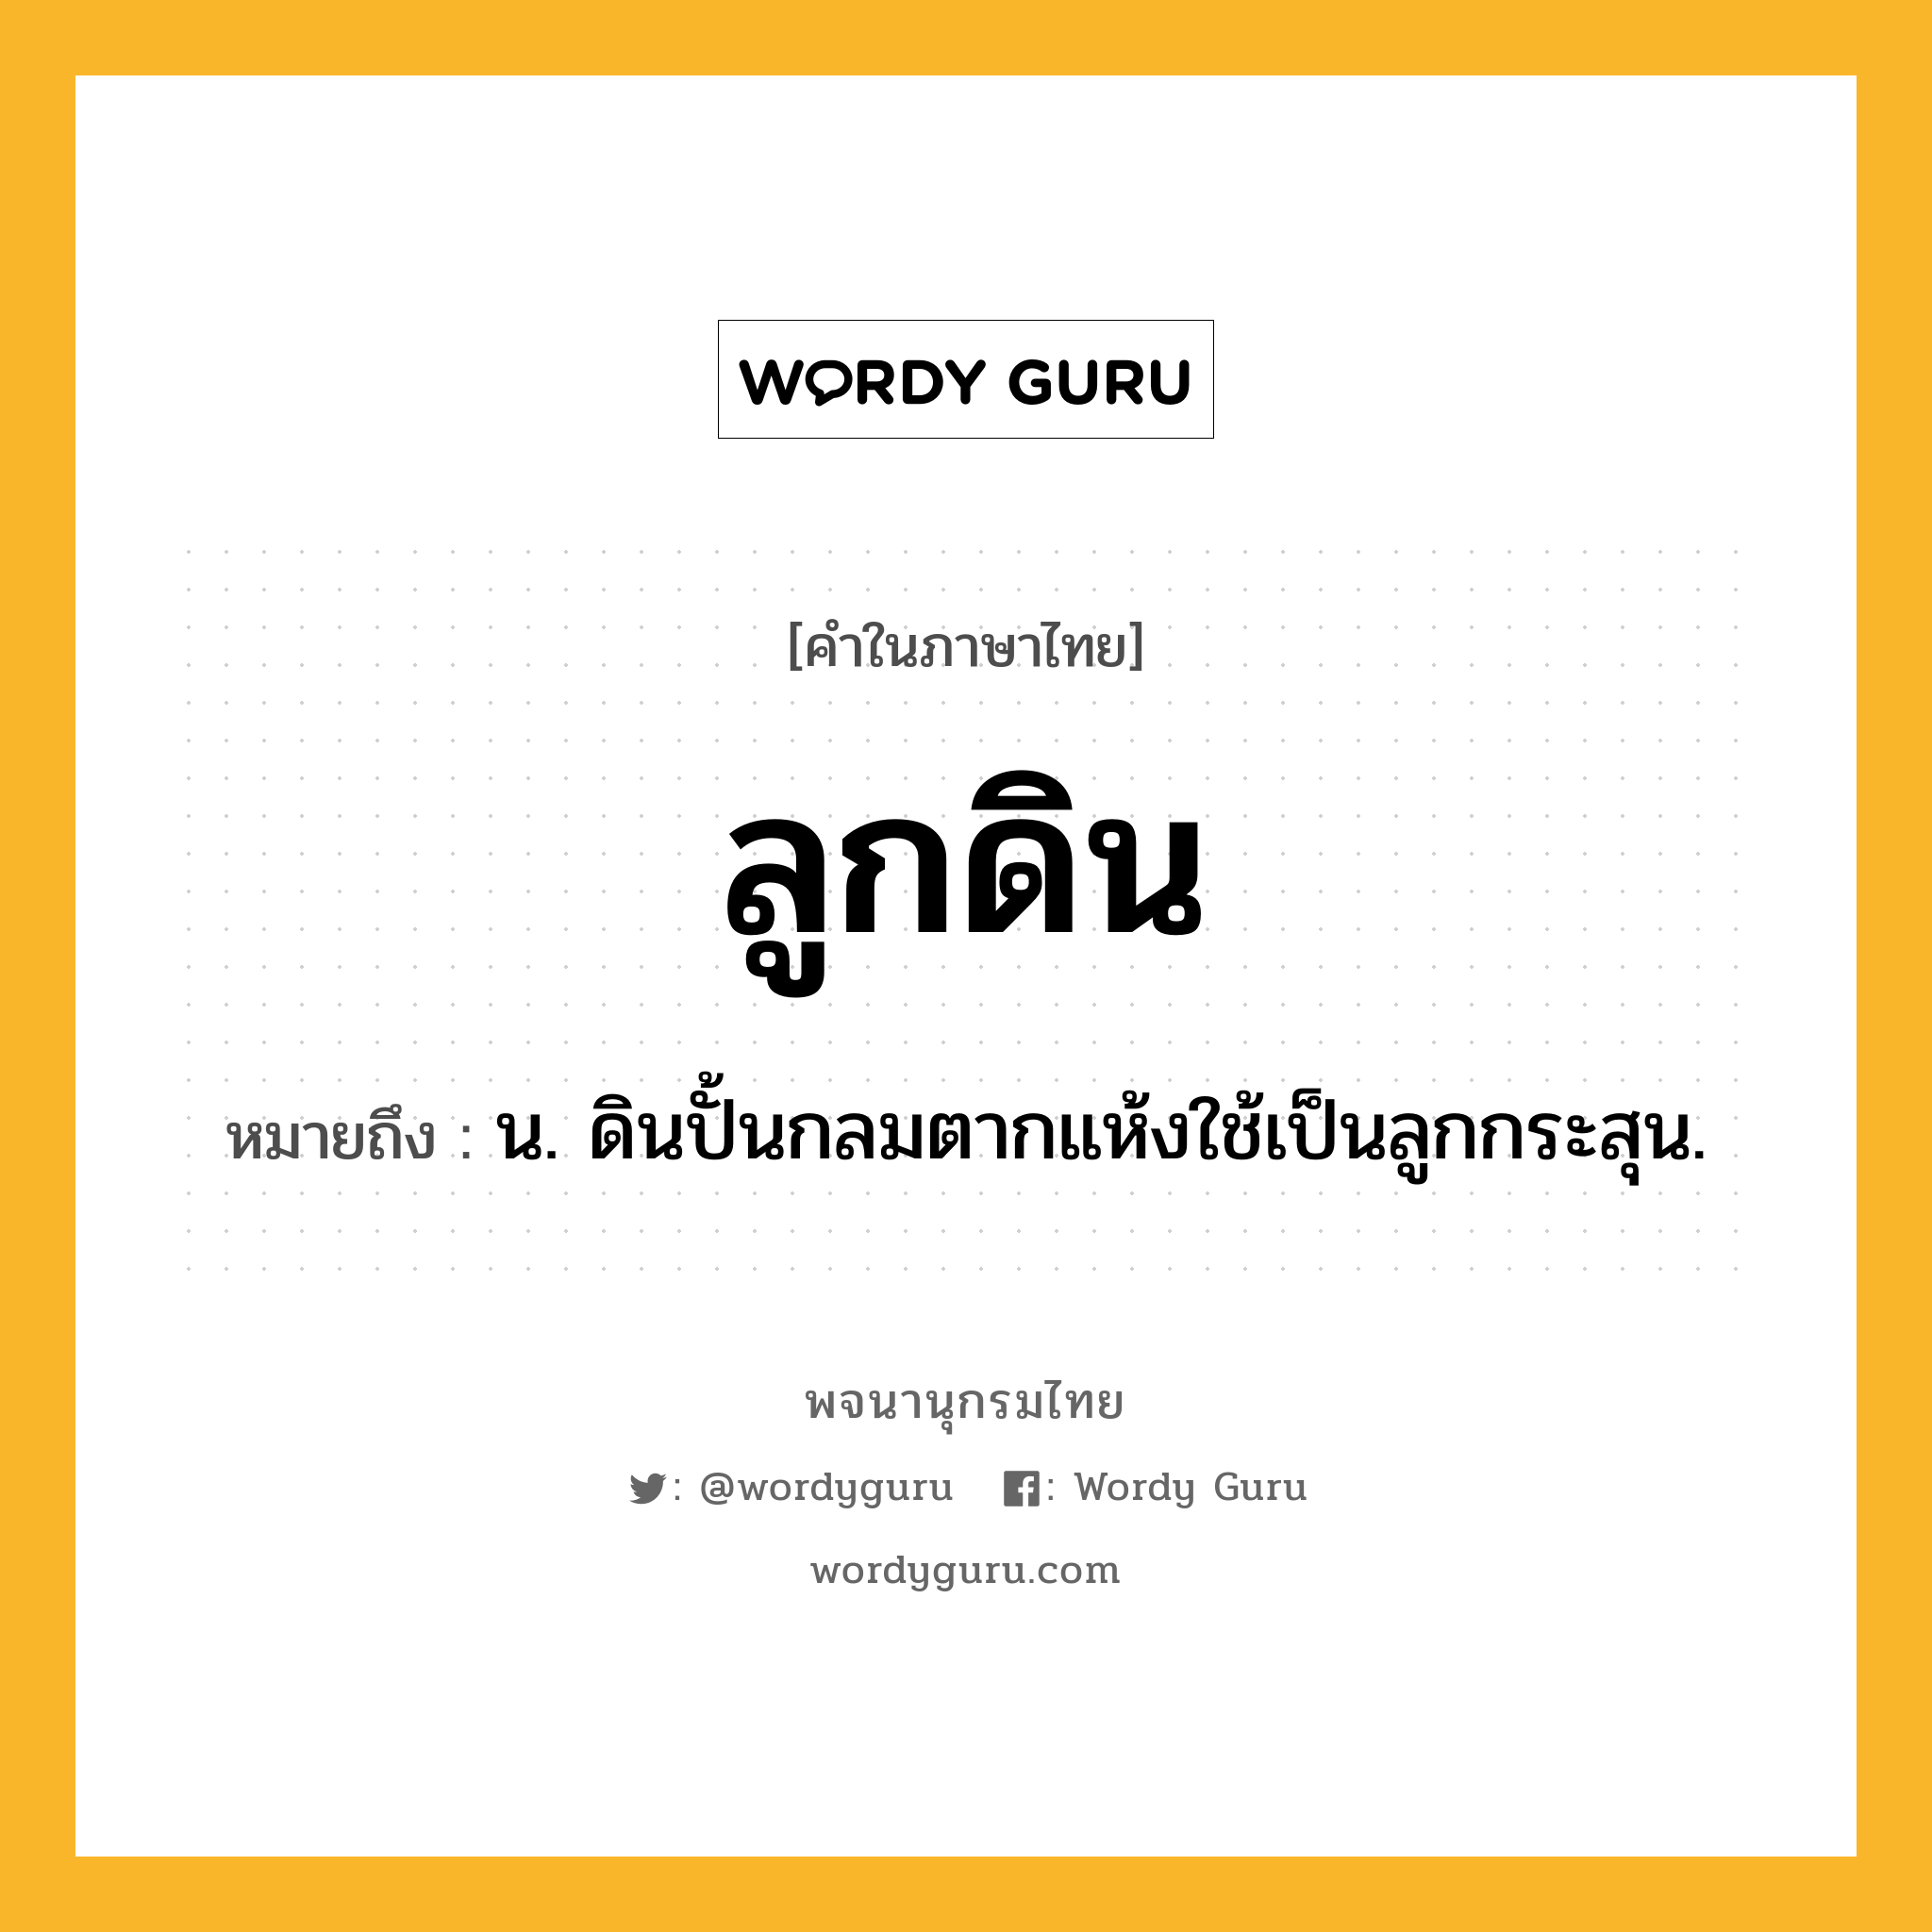 ลูกดิน ความหมาย หมายถึงอะไร?, คำในภาษาไทย ลูกดิน หมายถึง น. ดินปั้นกลมตากแห้งใช้เป็นลูกกระสุน.